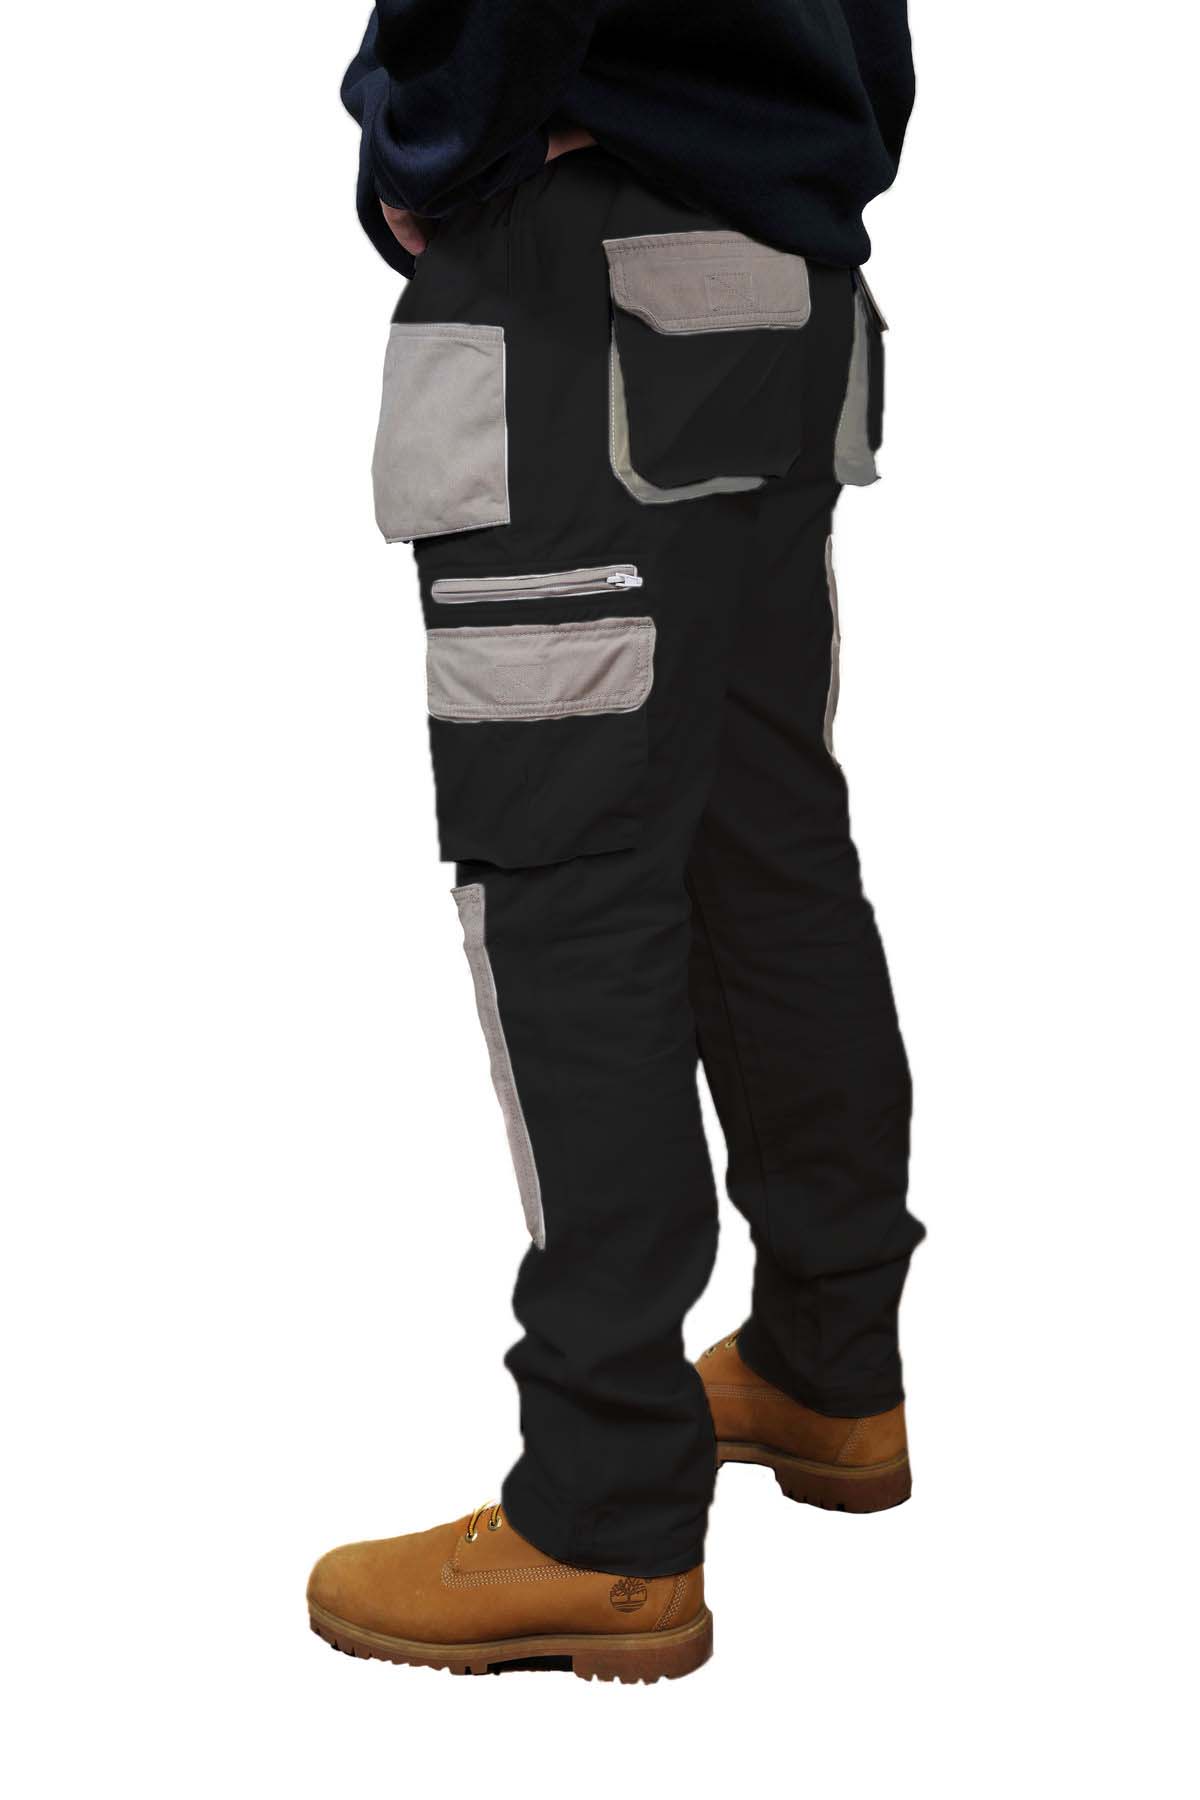 FMG - Black Industry Cargo Trouser